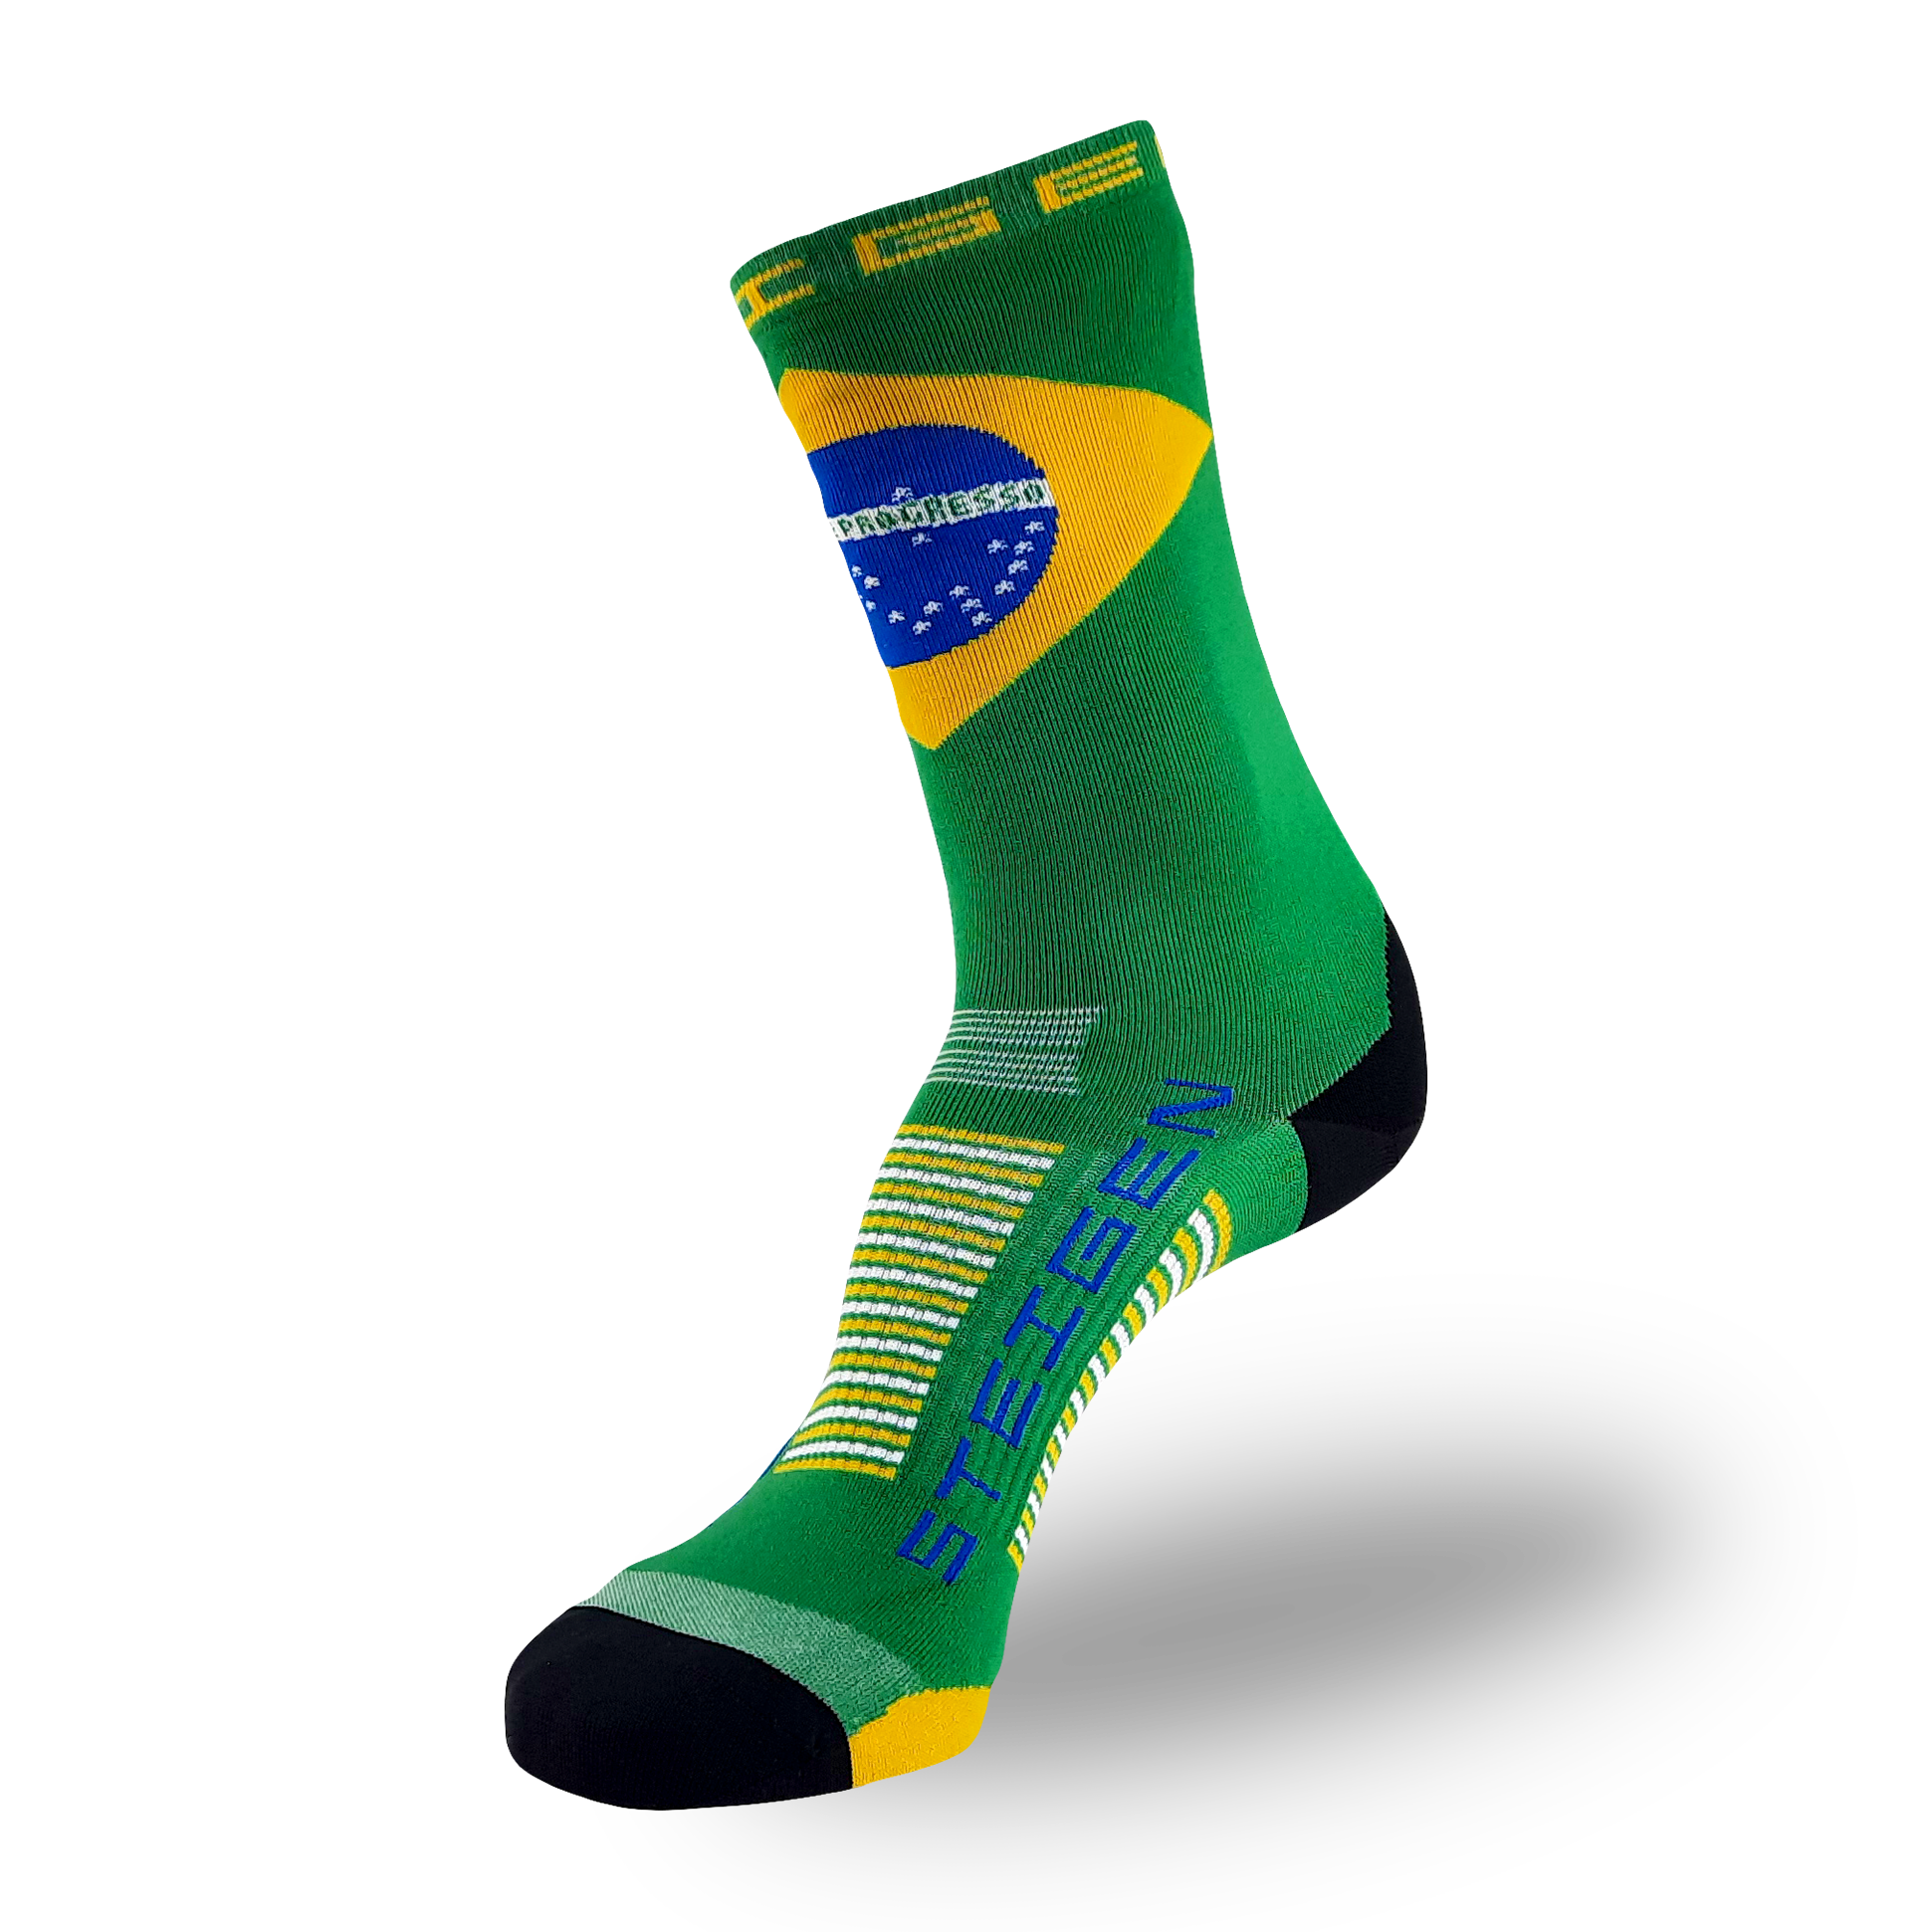 Brazil Running Socks ¾ Length